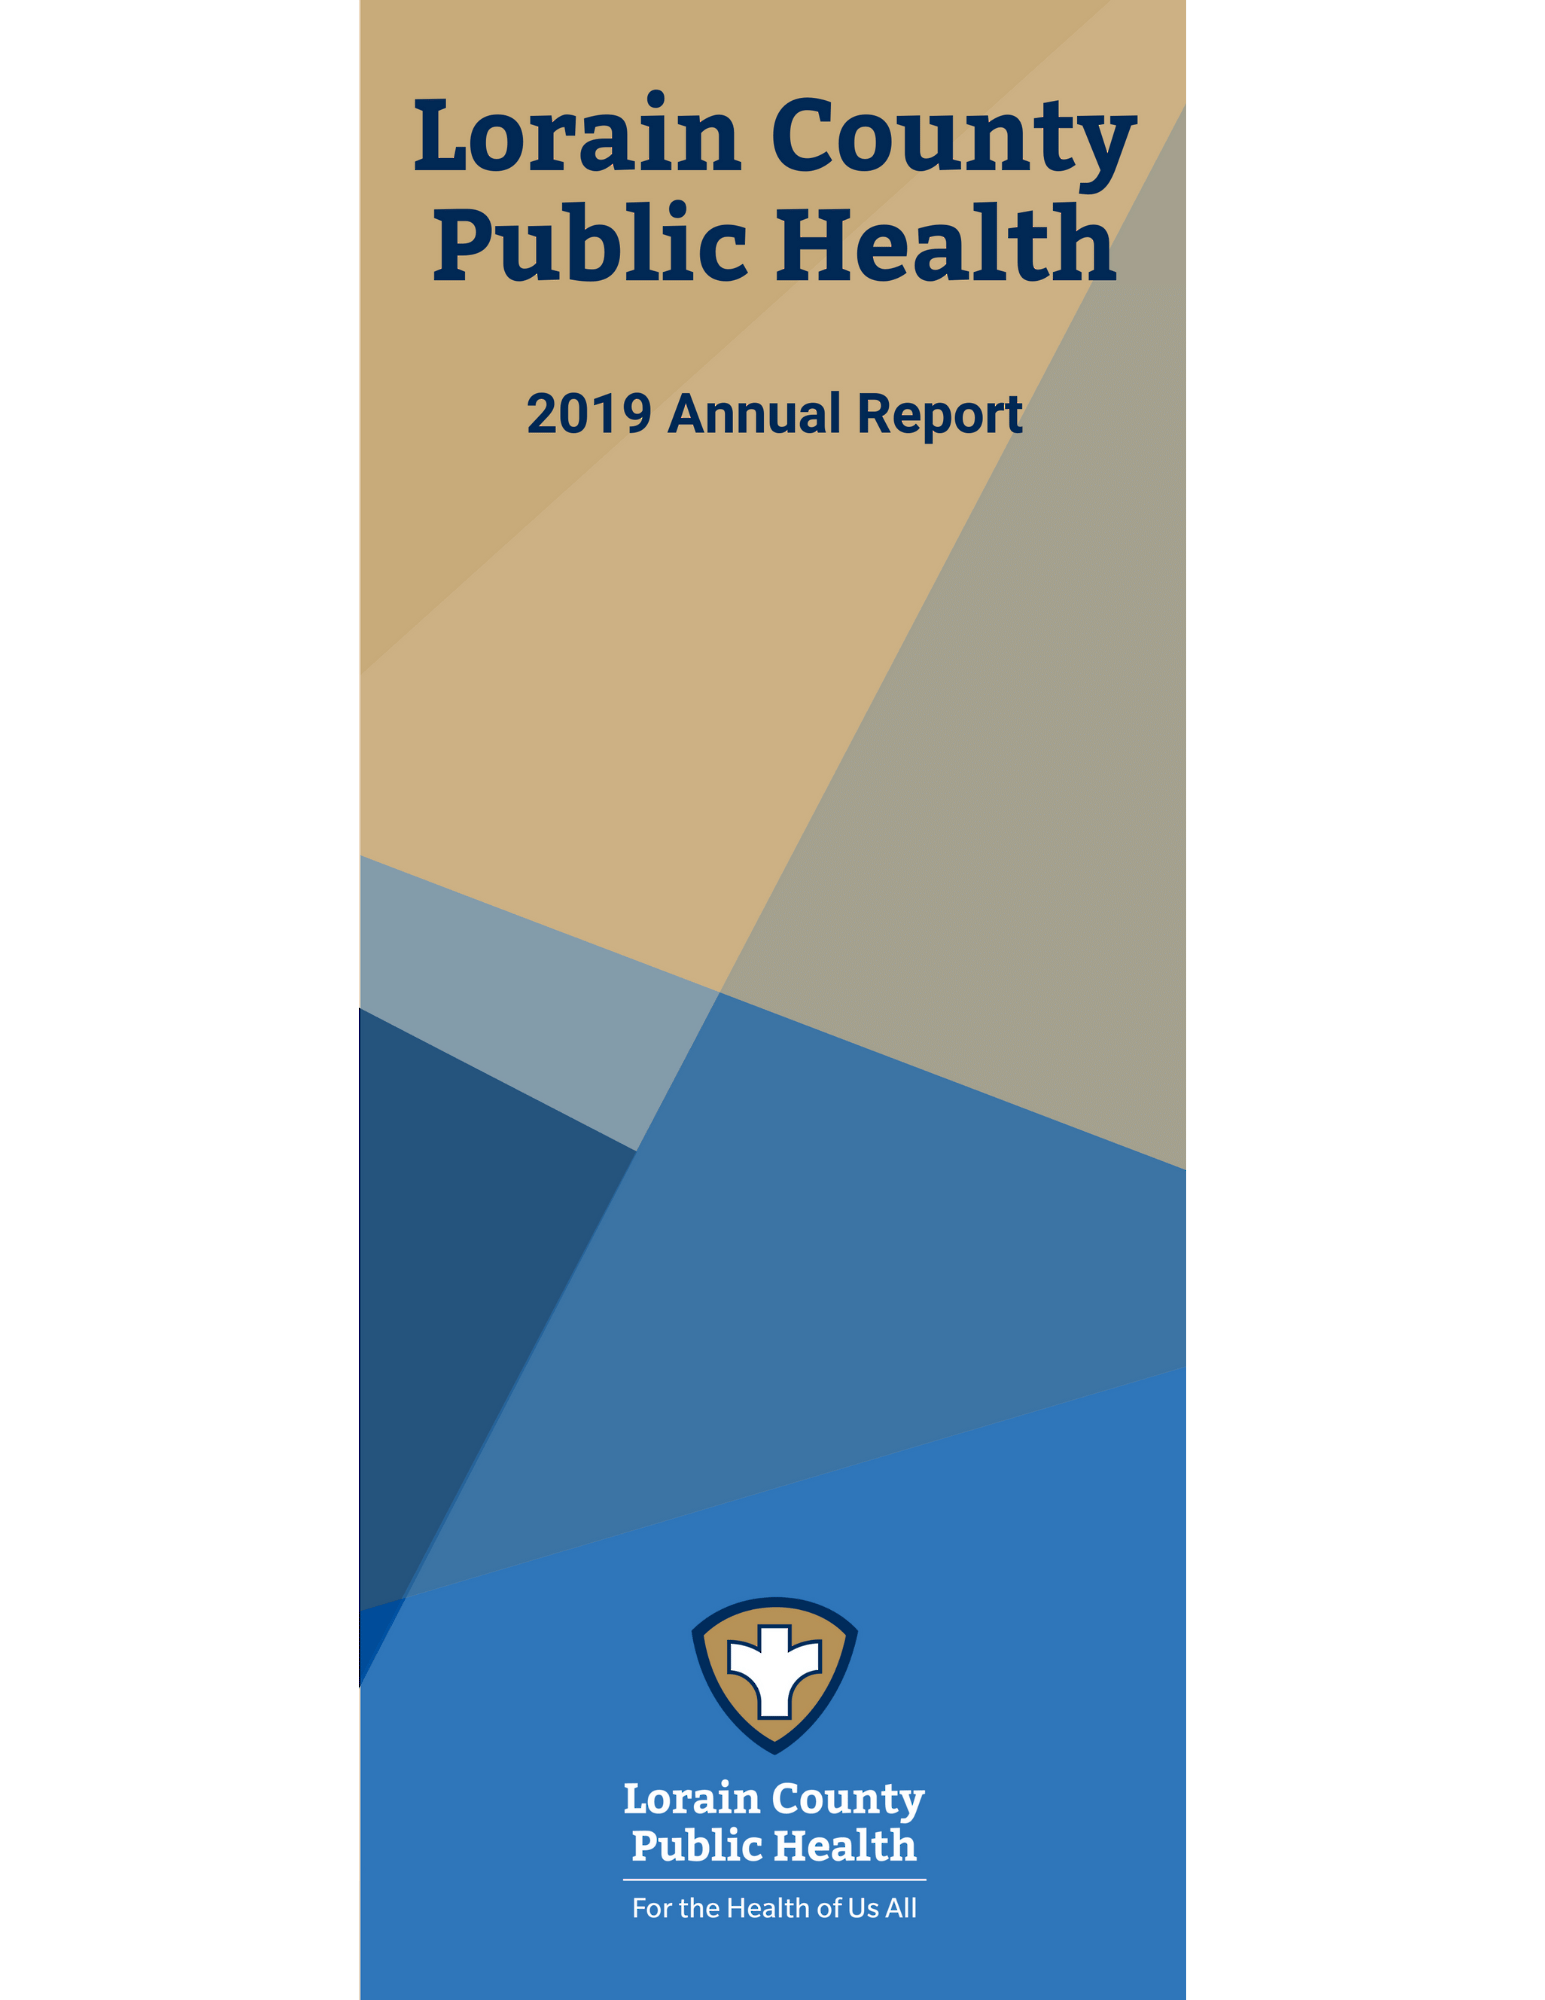 Title page: Lorain County Public Health: 2019 Annual Report